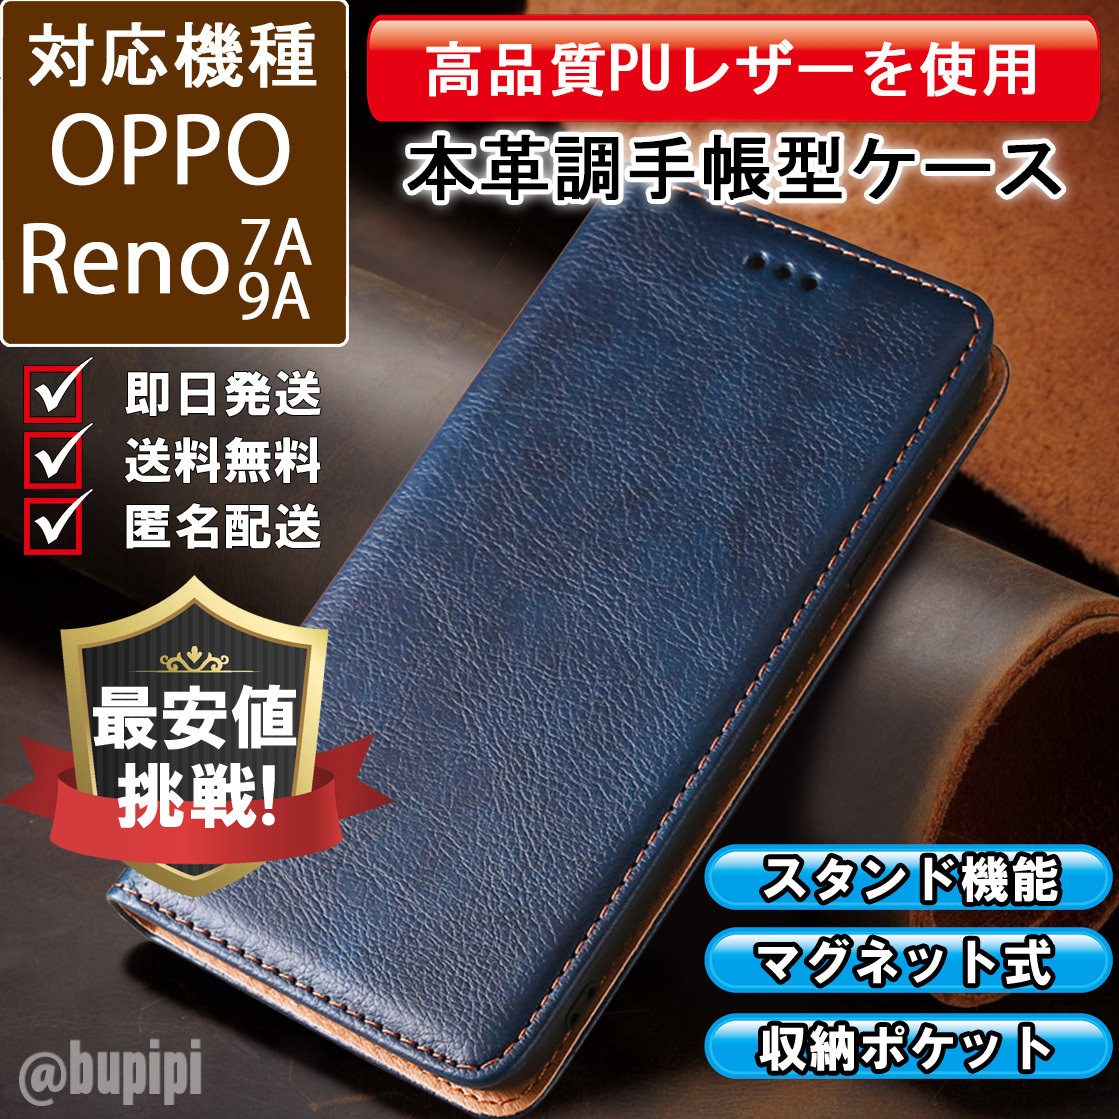 レザー 手帳型 スマホケース 高品質 OPPO Reno 7A 9A 対応 本革調 カバー ブルー CKP075の画像1